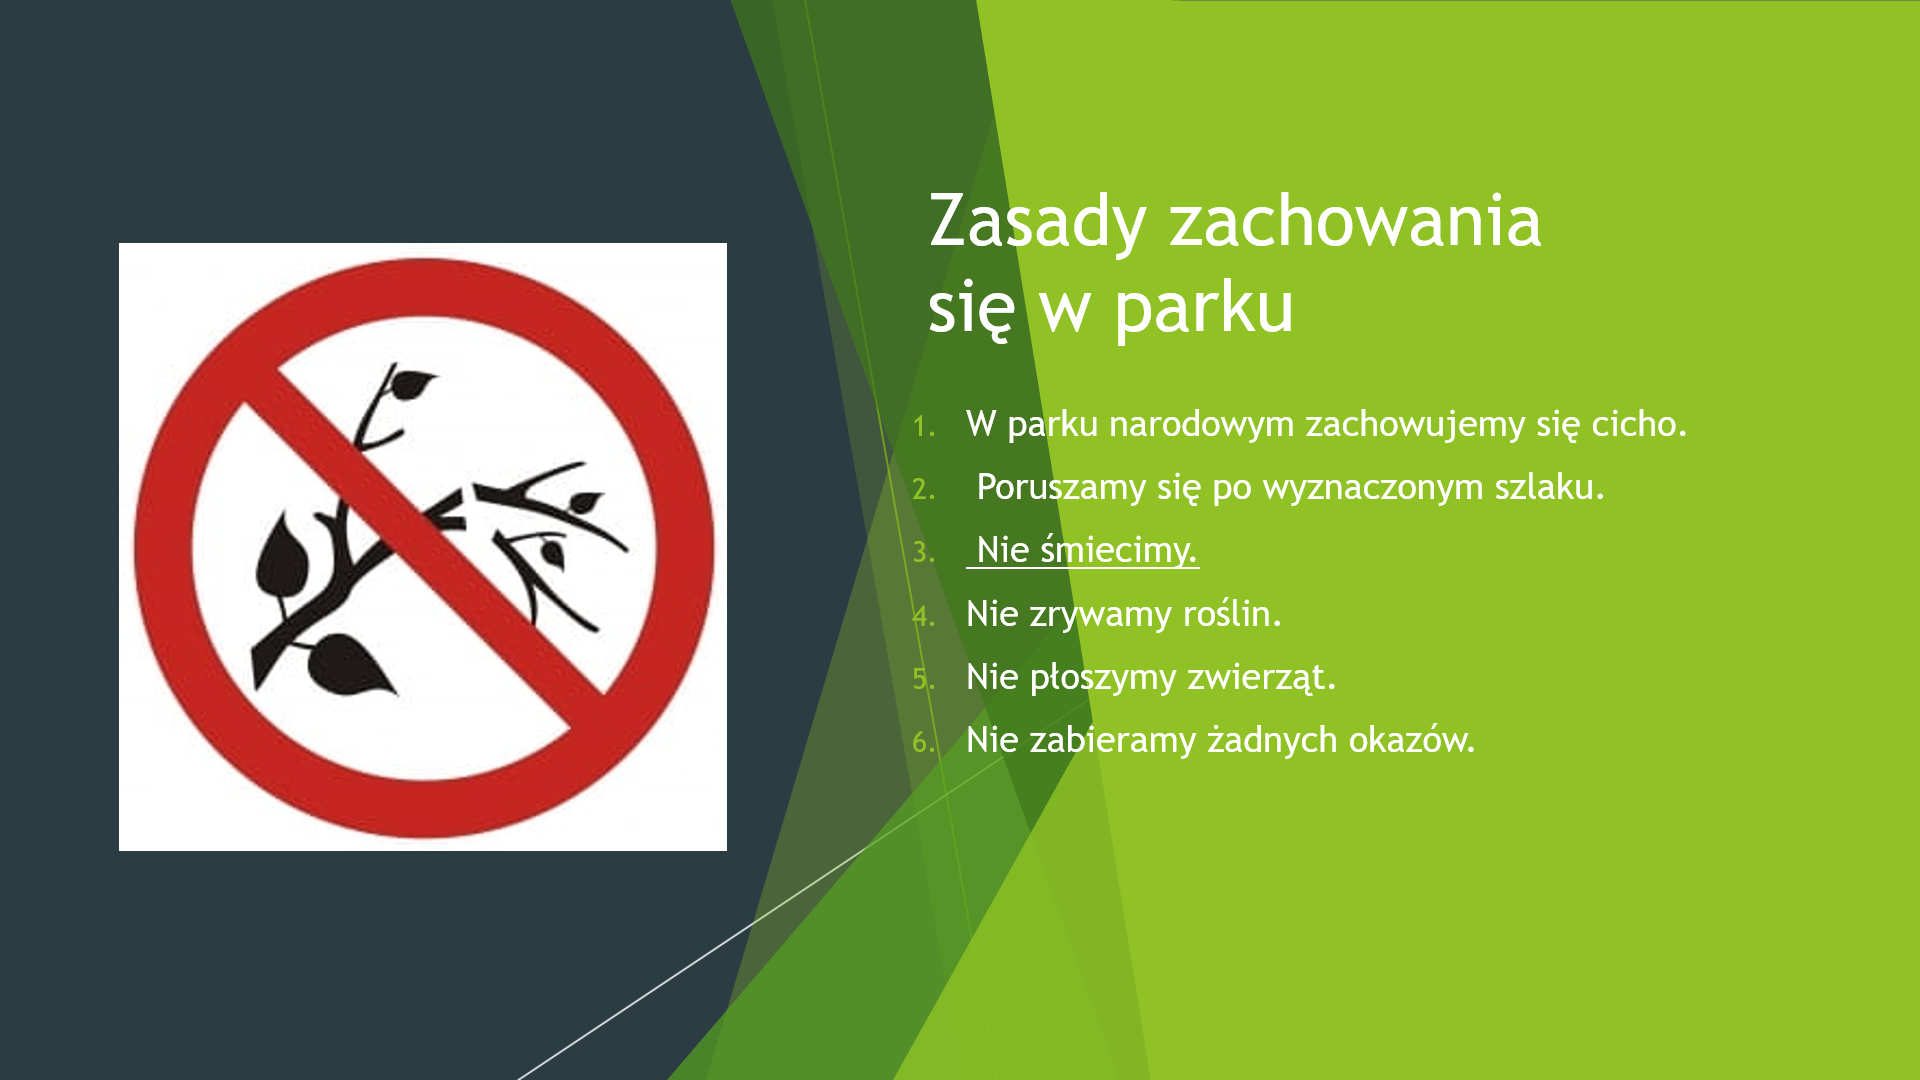 Na zdjęciu widnieje znak przedstawiający zakaz łamania gałęzi. Obok zdjęcia umieszczone zasady zachowania się w parku.